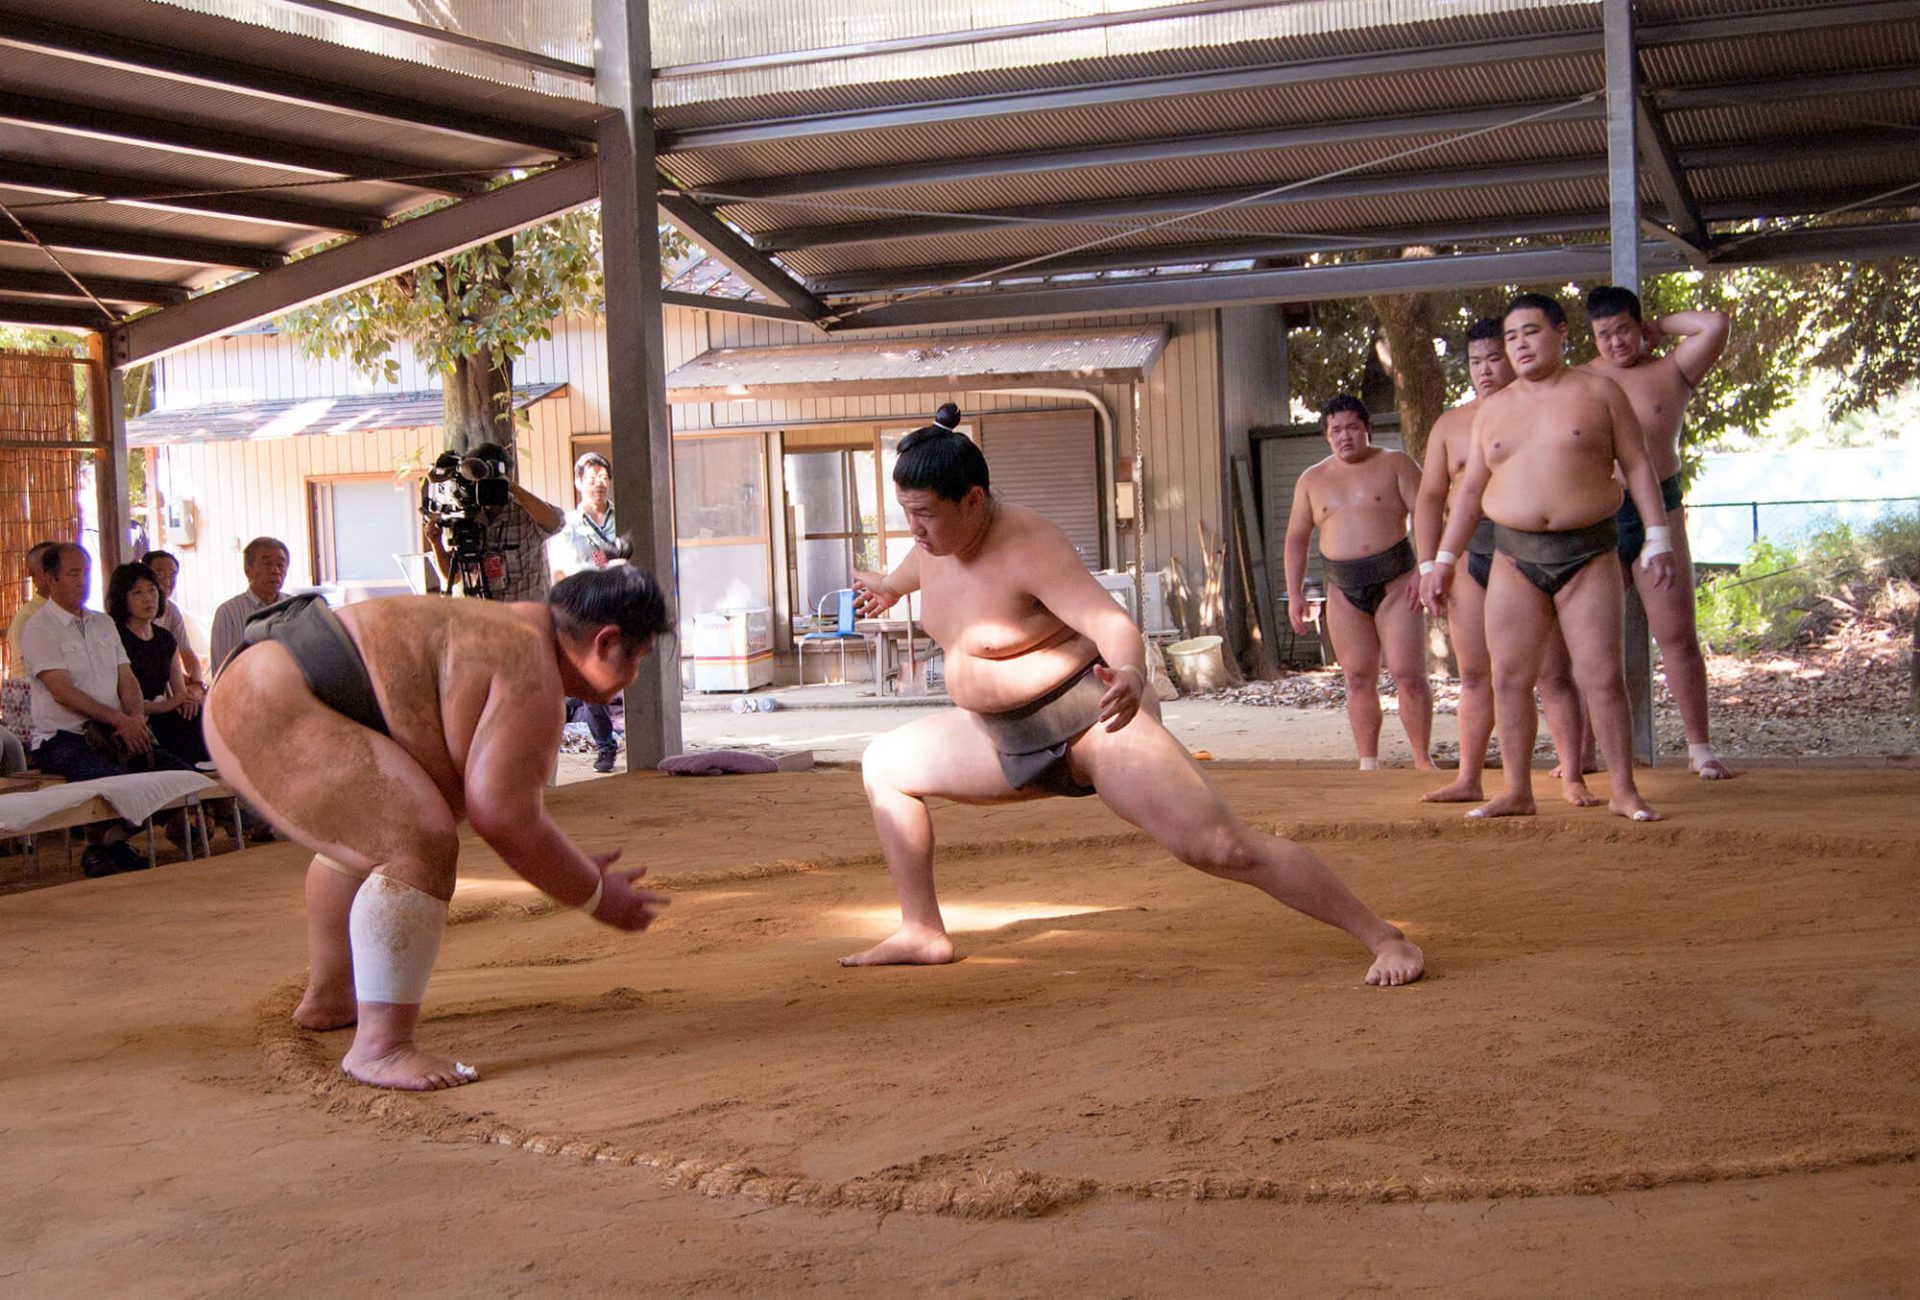 Qué tan fuerte puede ser un luchador de sumo, considerando que no son  musculosos? - Quora